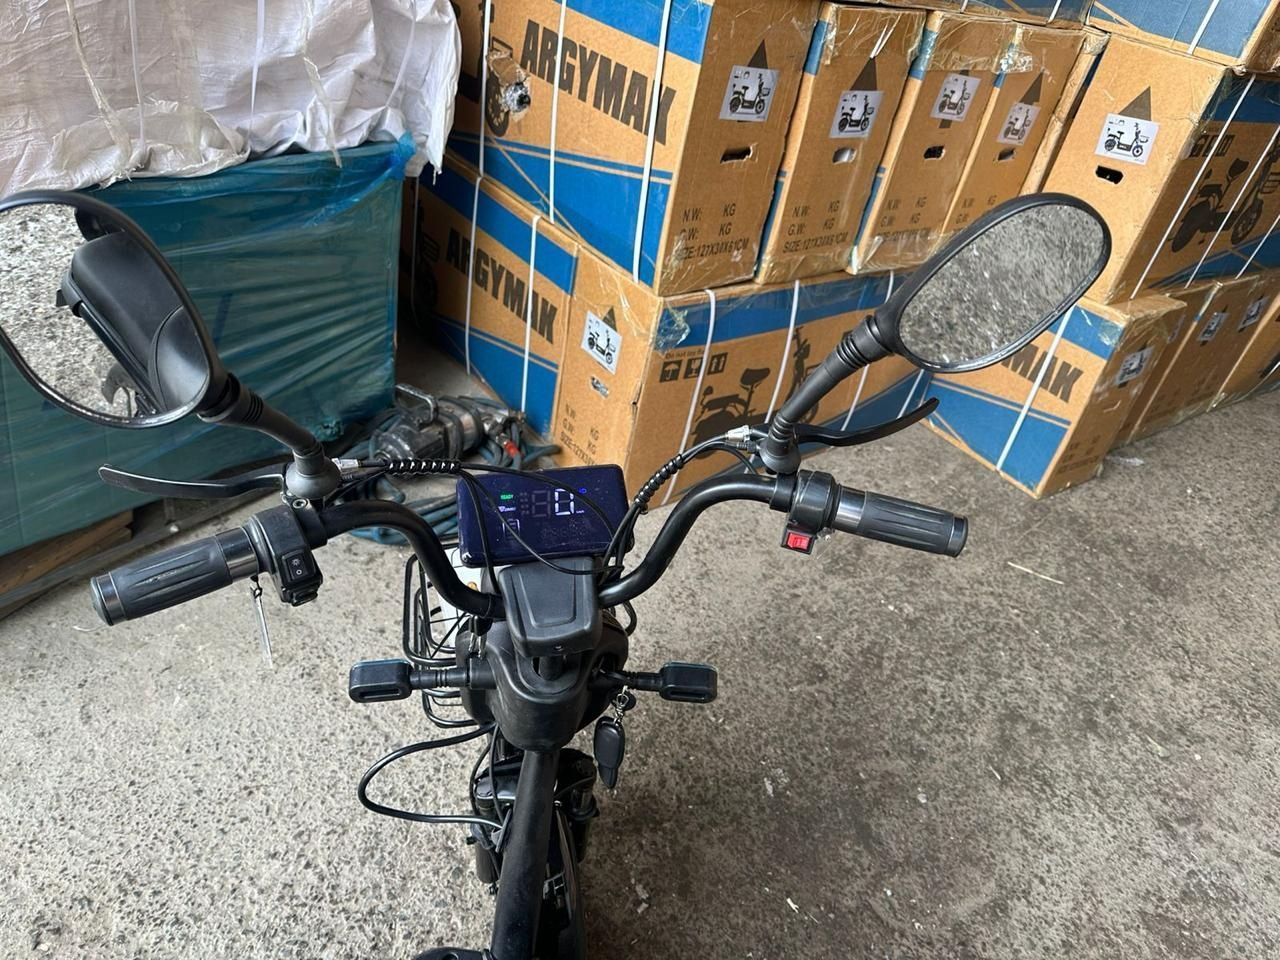 Продам электро скутер Новая в упаковке. 350W